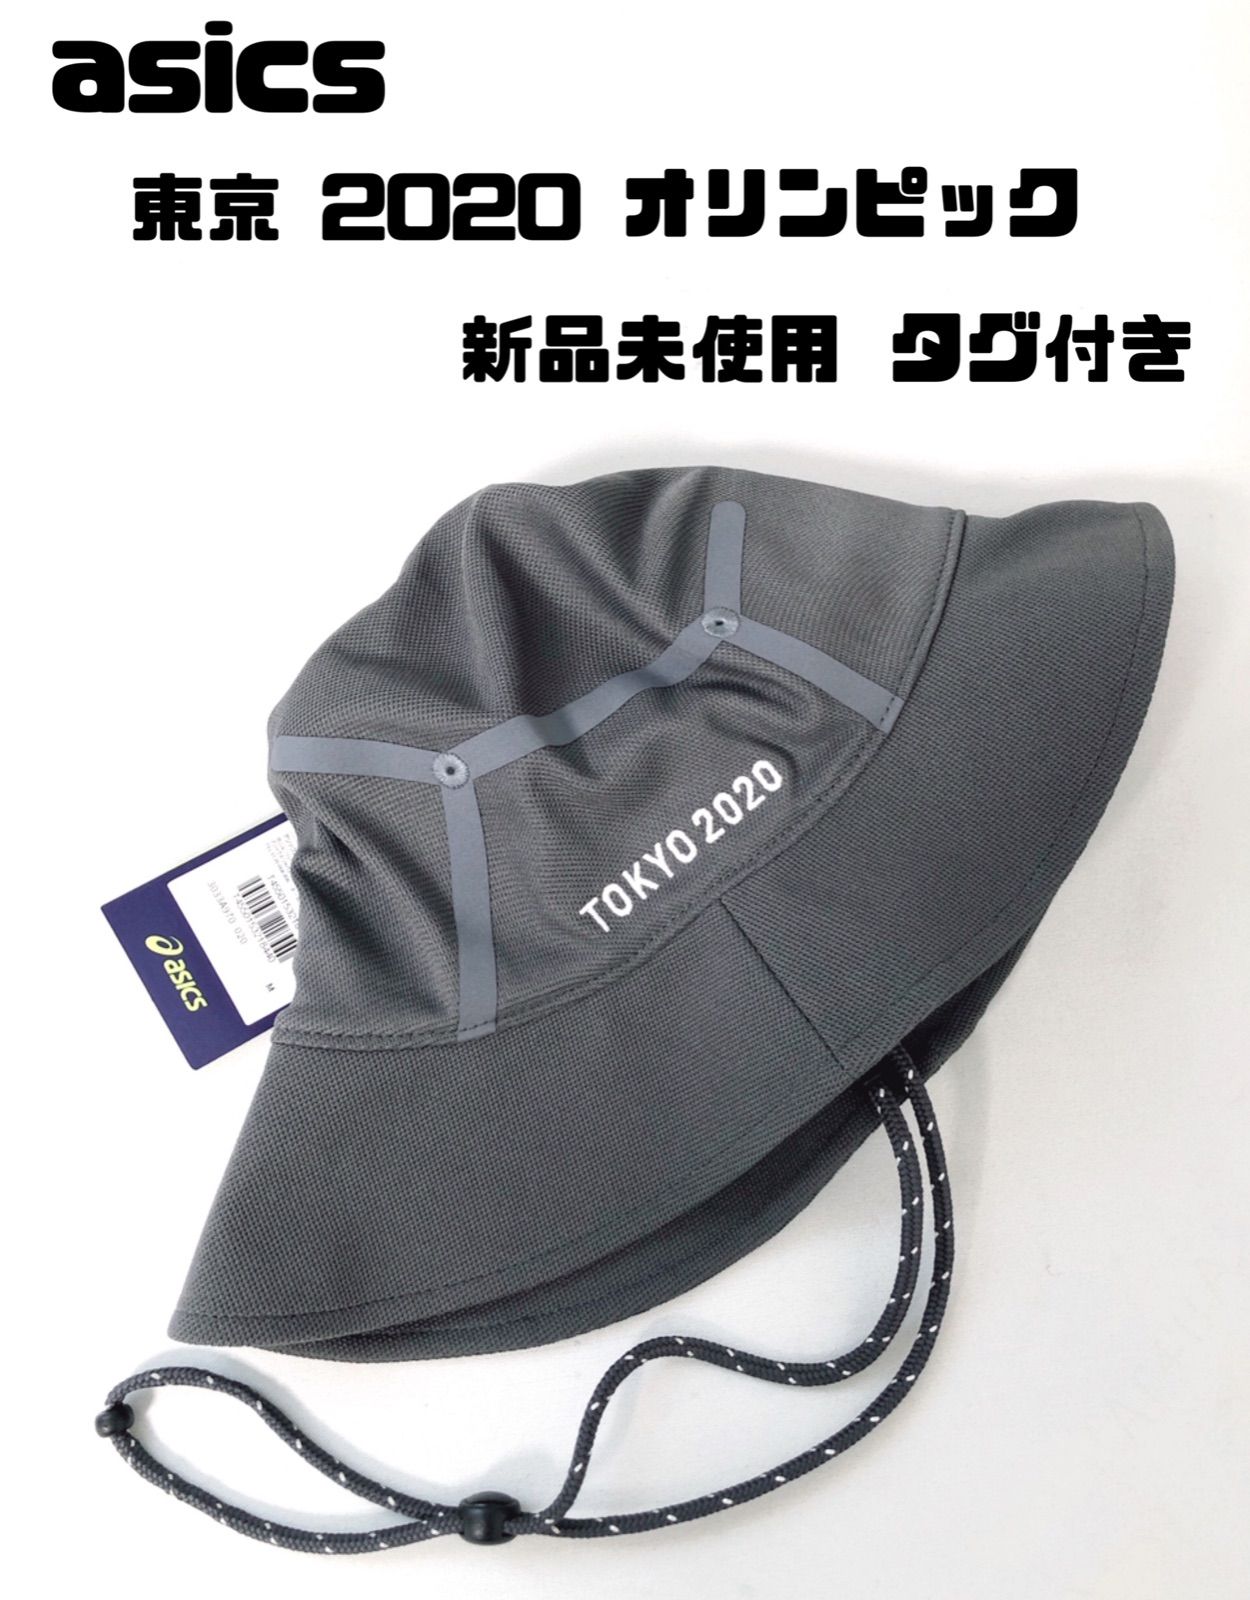 アシックス ハット TOKYO2020 東京オリンピック 限定 - 帽子